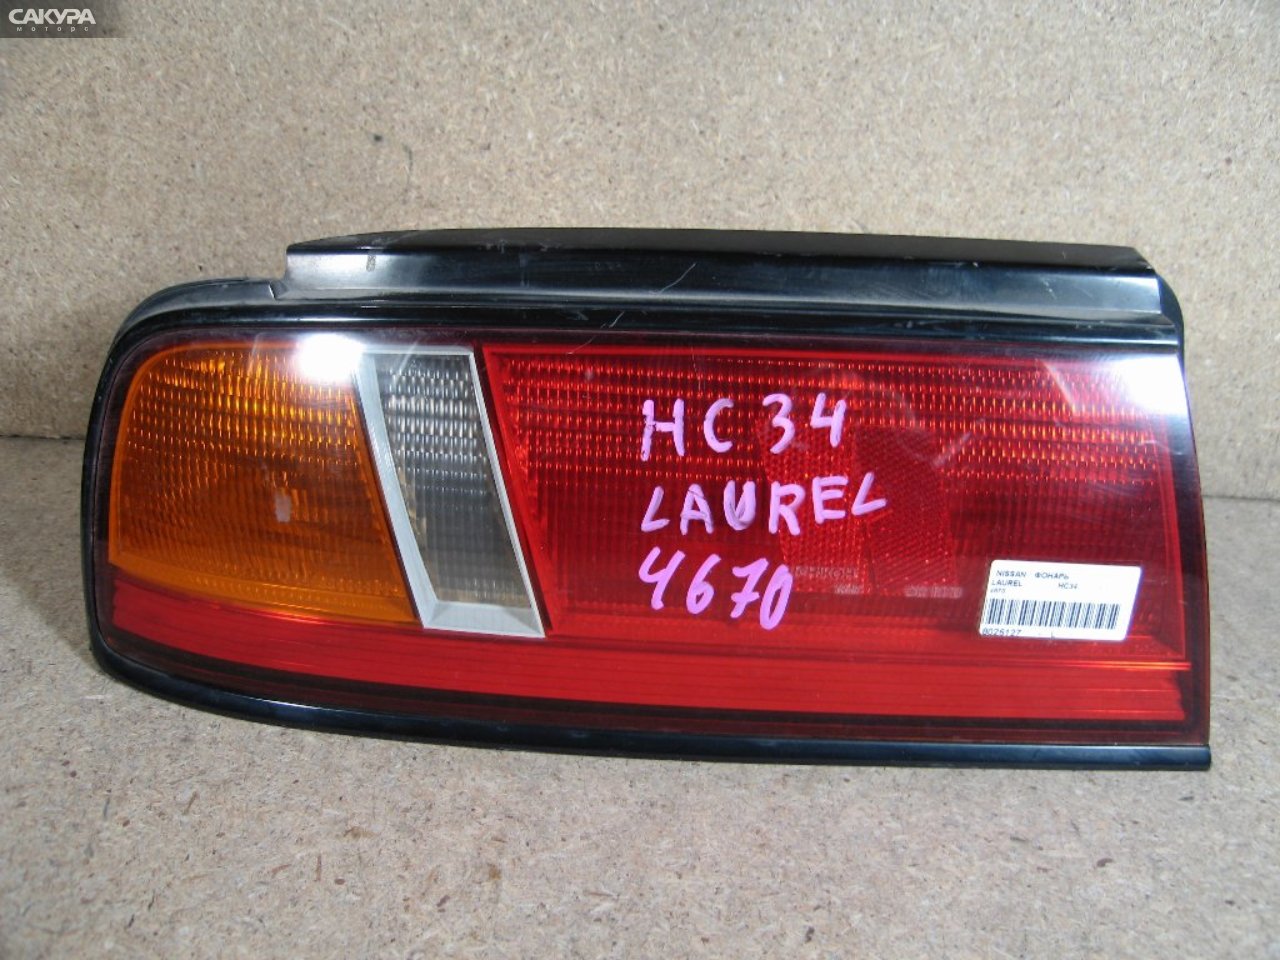 Фонарь стоп-сигнала левый Nissan Laurel HC34 4670: купить в Сакура Абакан.